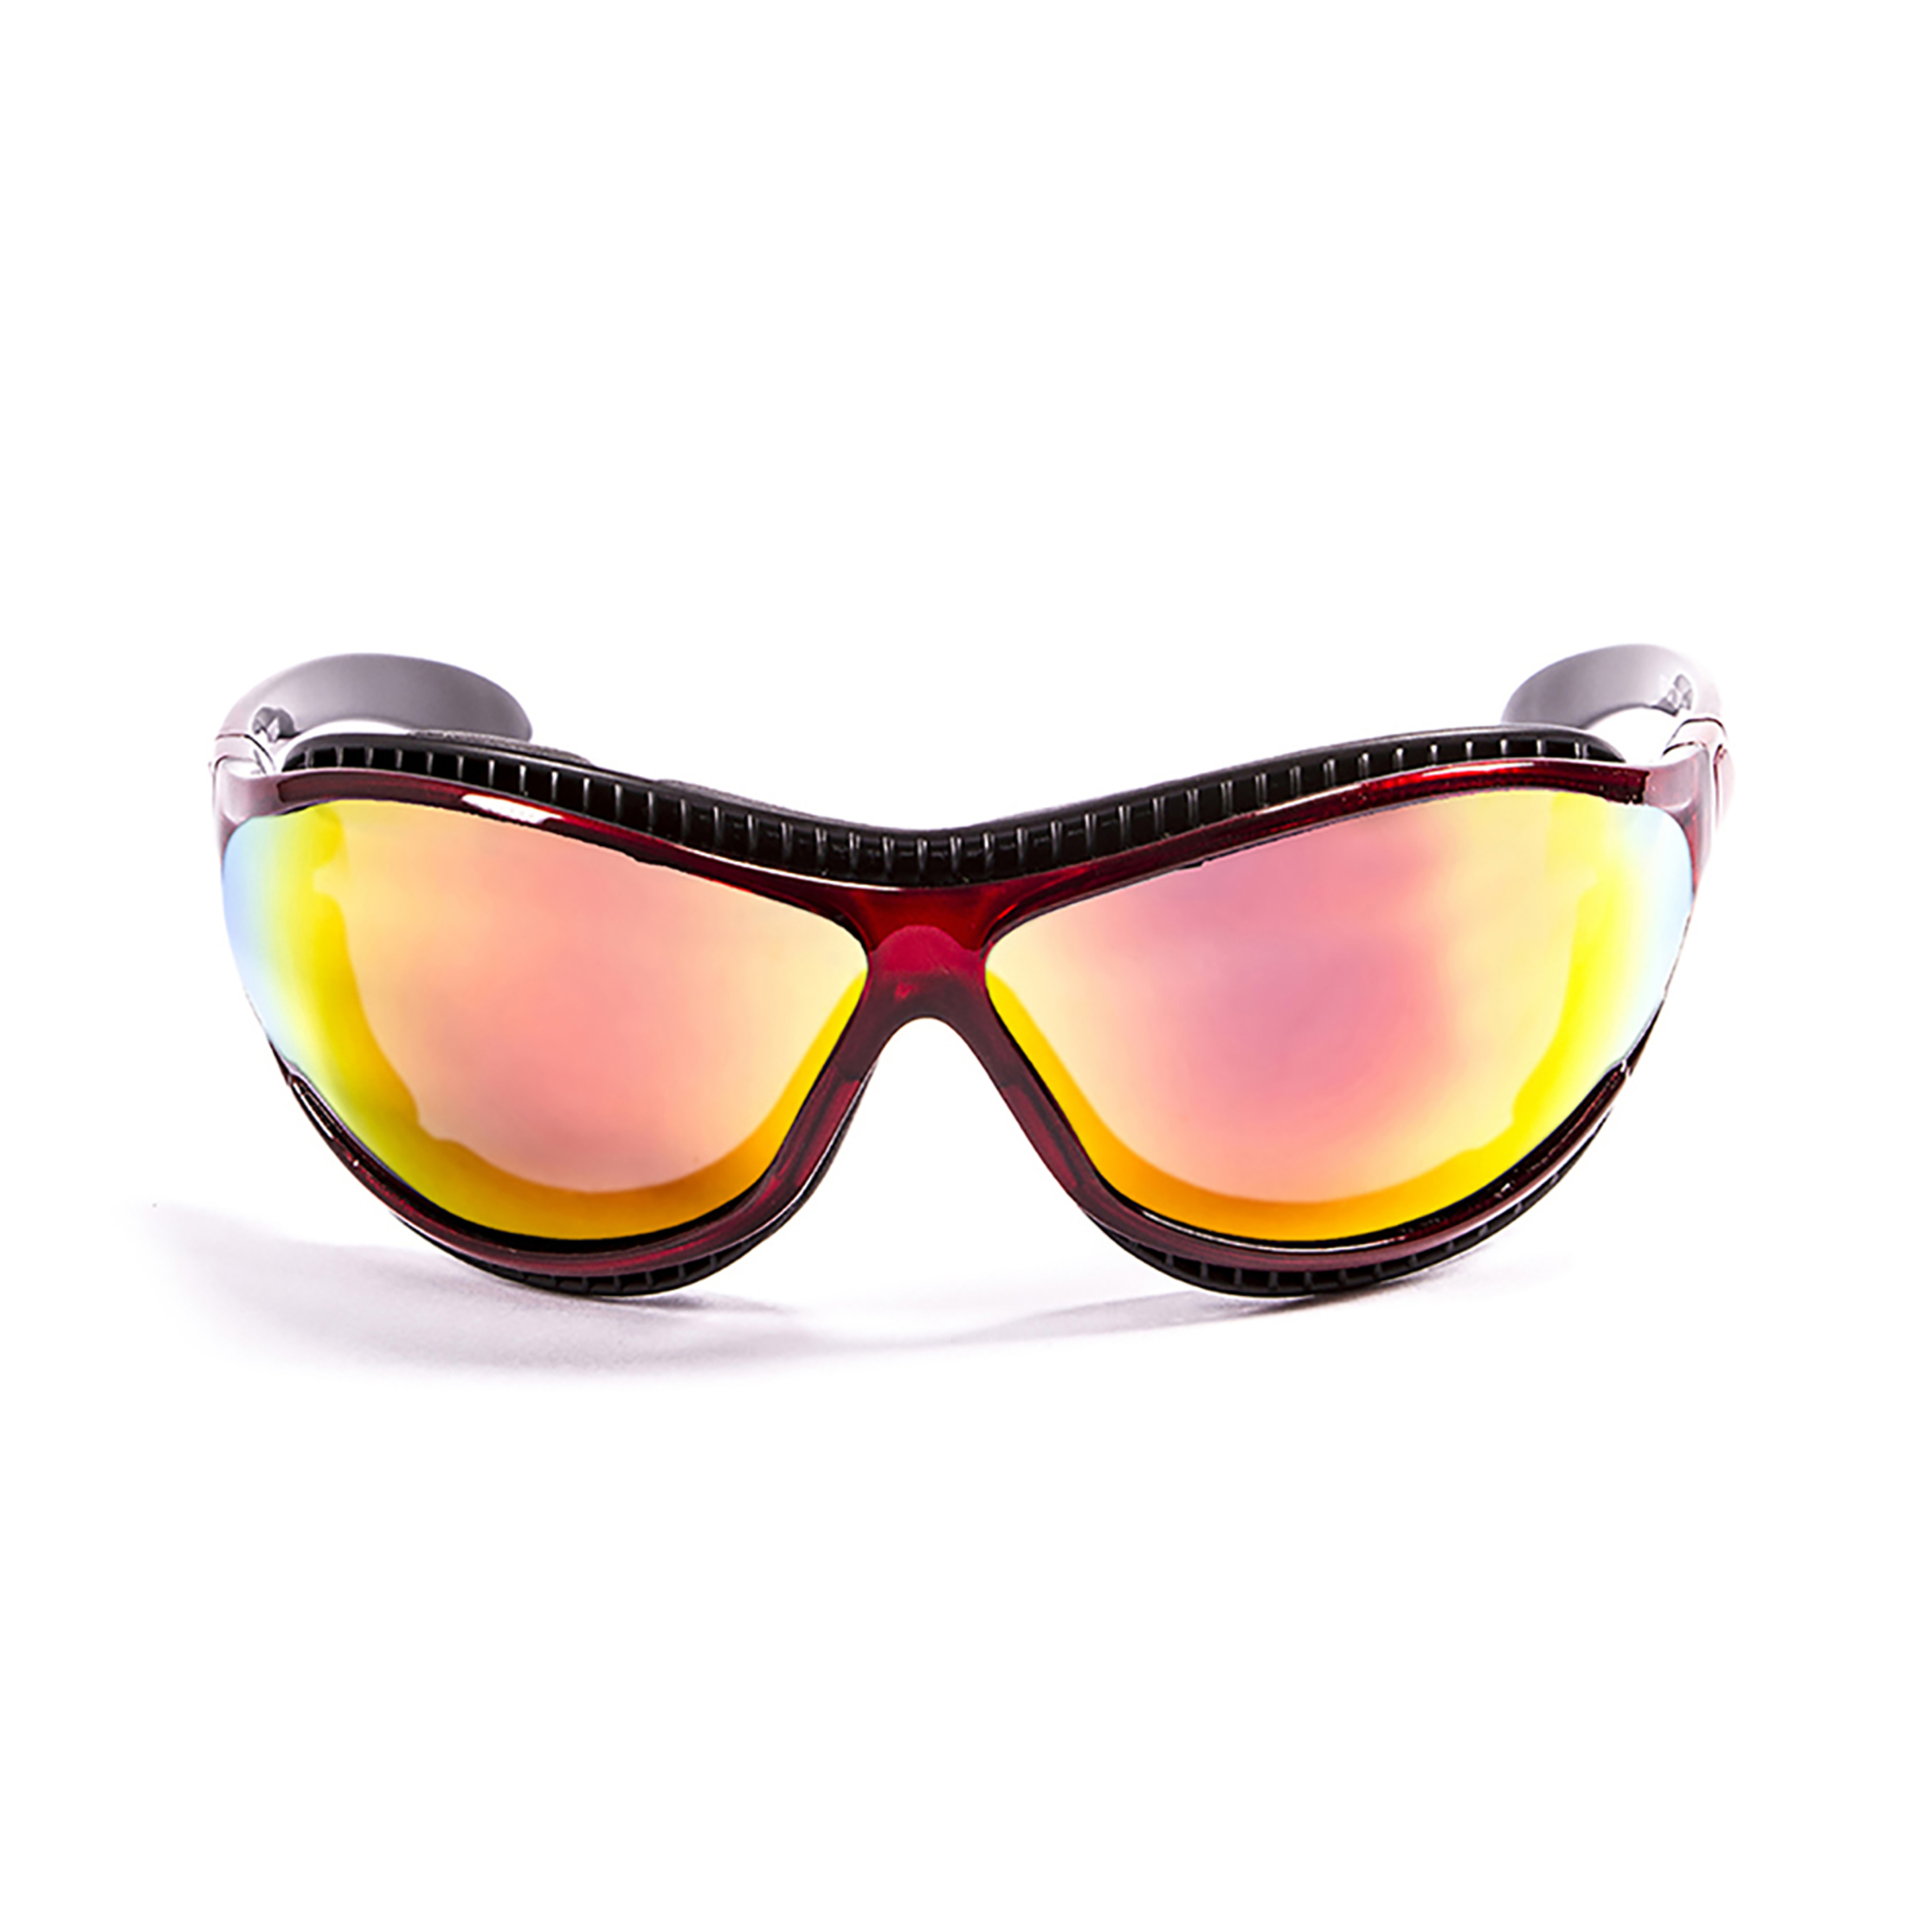 Gafas De Sol Técnicas Para La Práctica De Deportes De Agua Tierra De Fuego Ocean Sunglasses - Rojo  MKP